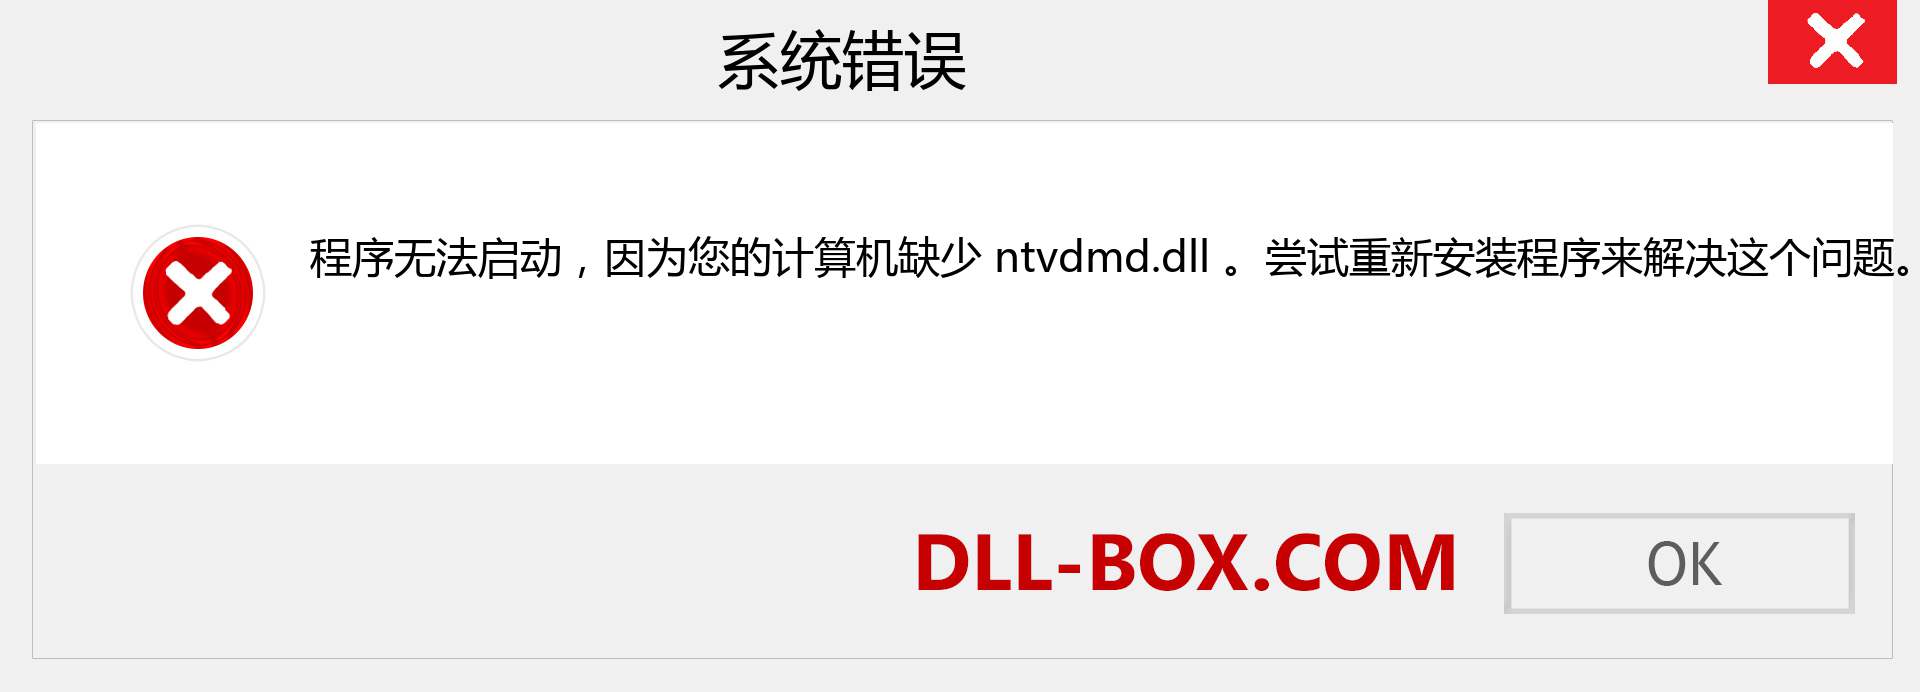 ntvdmd.dll 文件丢失？。 适用于 Windows 7、8、10 的下载 - 修复 Windows、照片、图像上的 ntvdmd dll 丢失错误